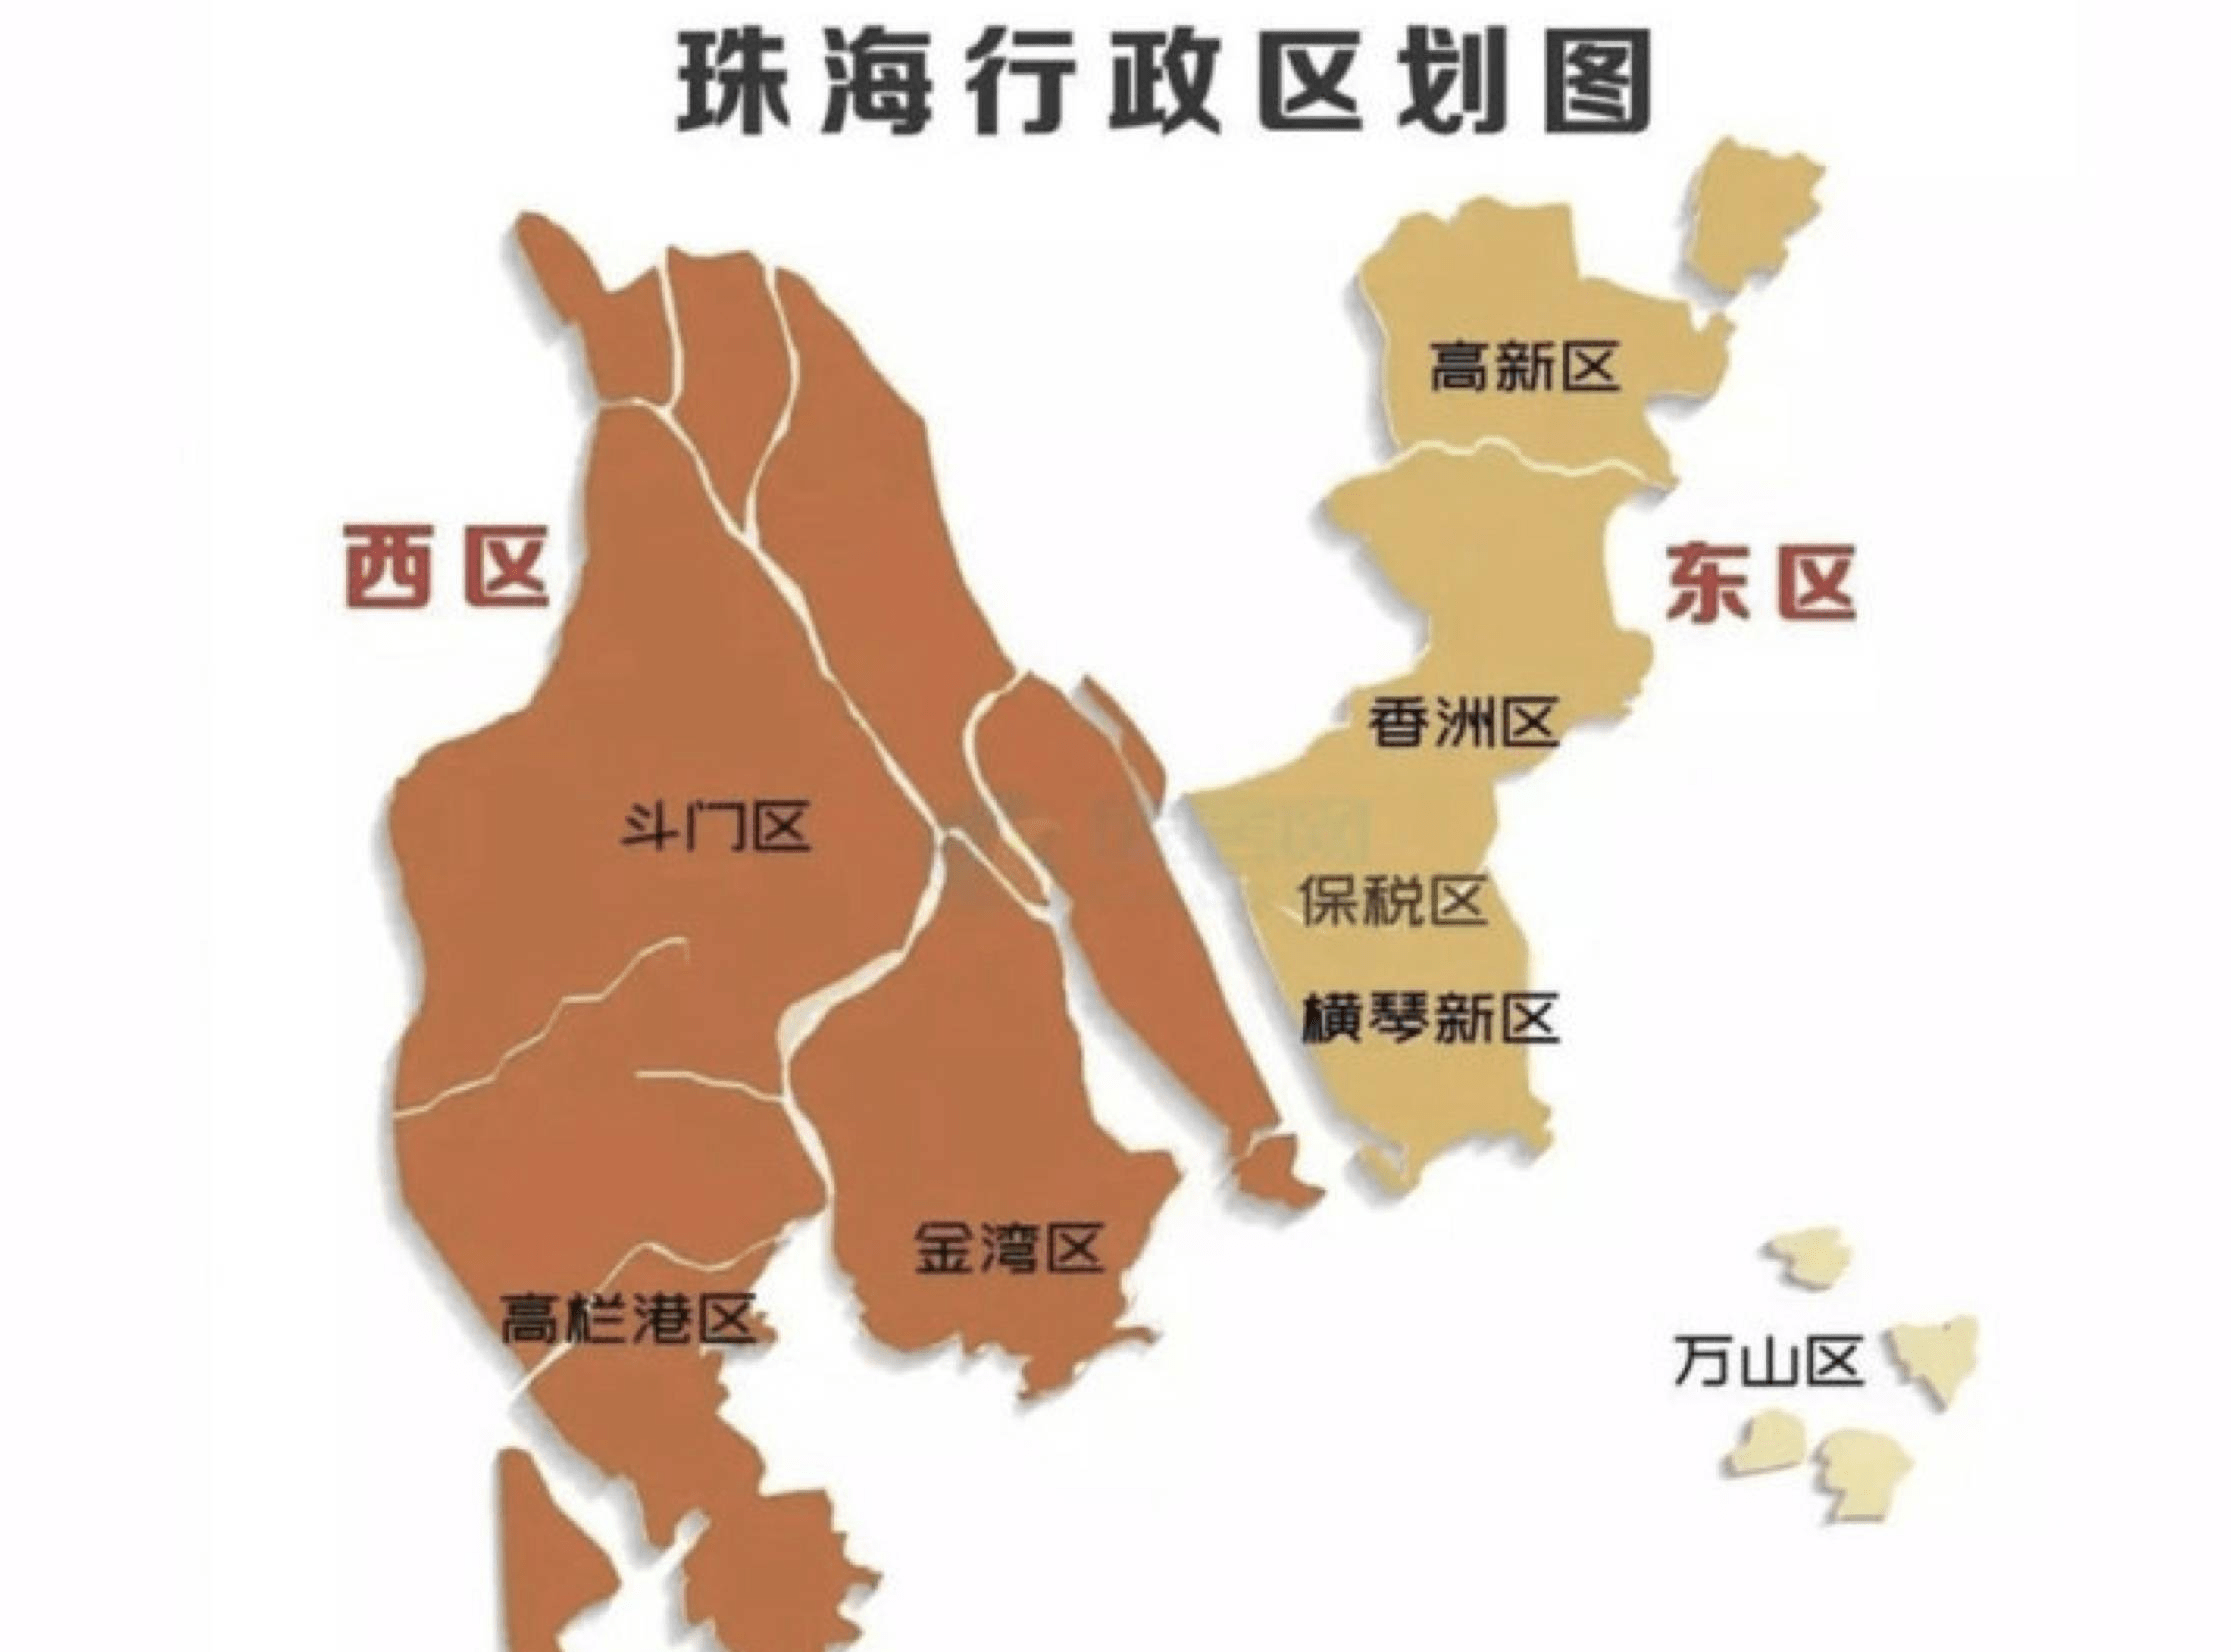 珠海市下辖3个行政区(香洲区,金湾区,斗门区),5个主要经济功能区(横琴